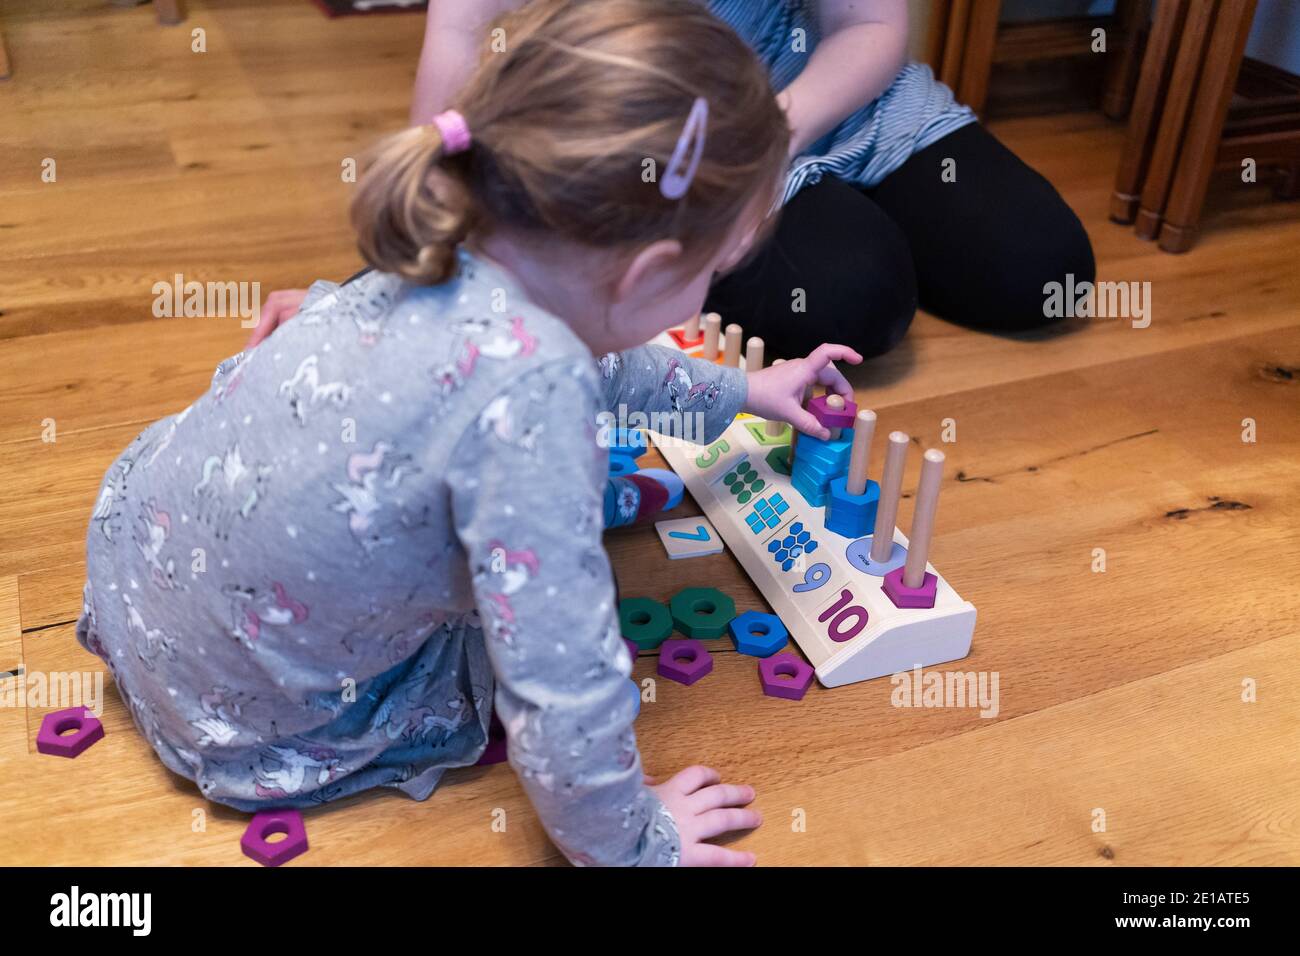 Une fille apprenant à compter avec sa mère en utilisant un jouet éducatif. Apprenant par essai et par erreur, elle a placé une forme colorée dans le mauvais domaine Banque D'Images